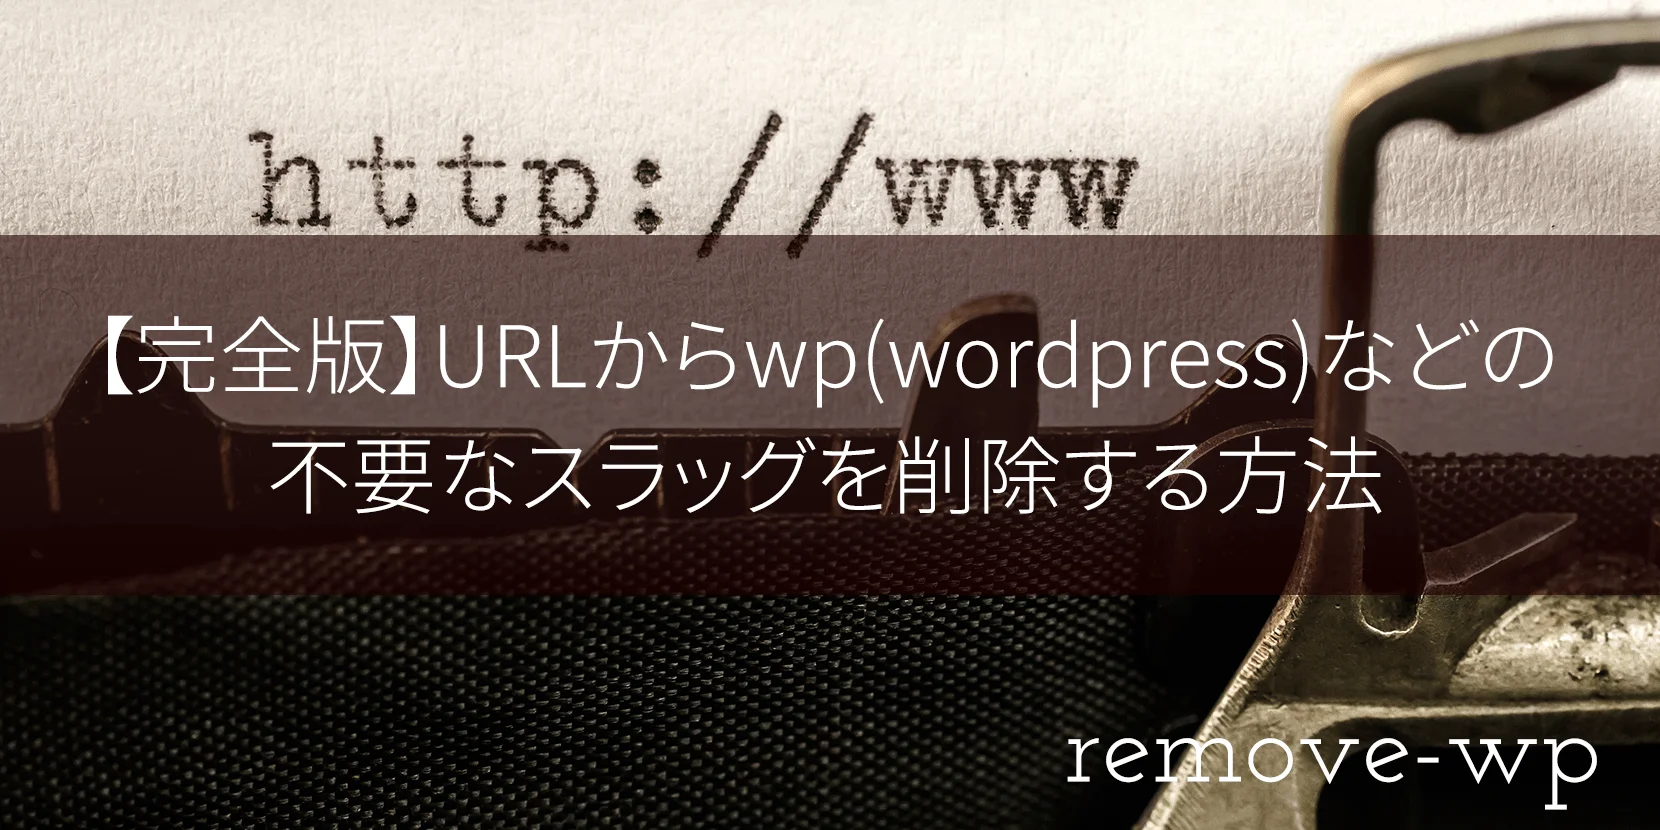 【完全版】URLからwp(wordpress)などの不要なスラッグを削除する方法